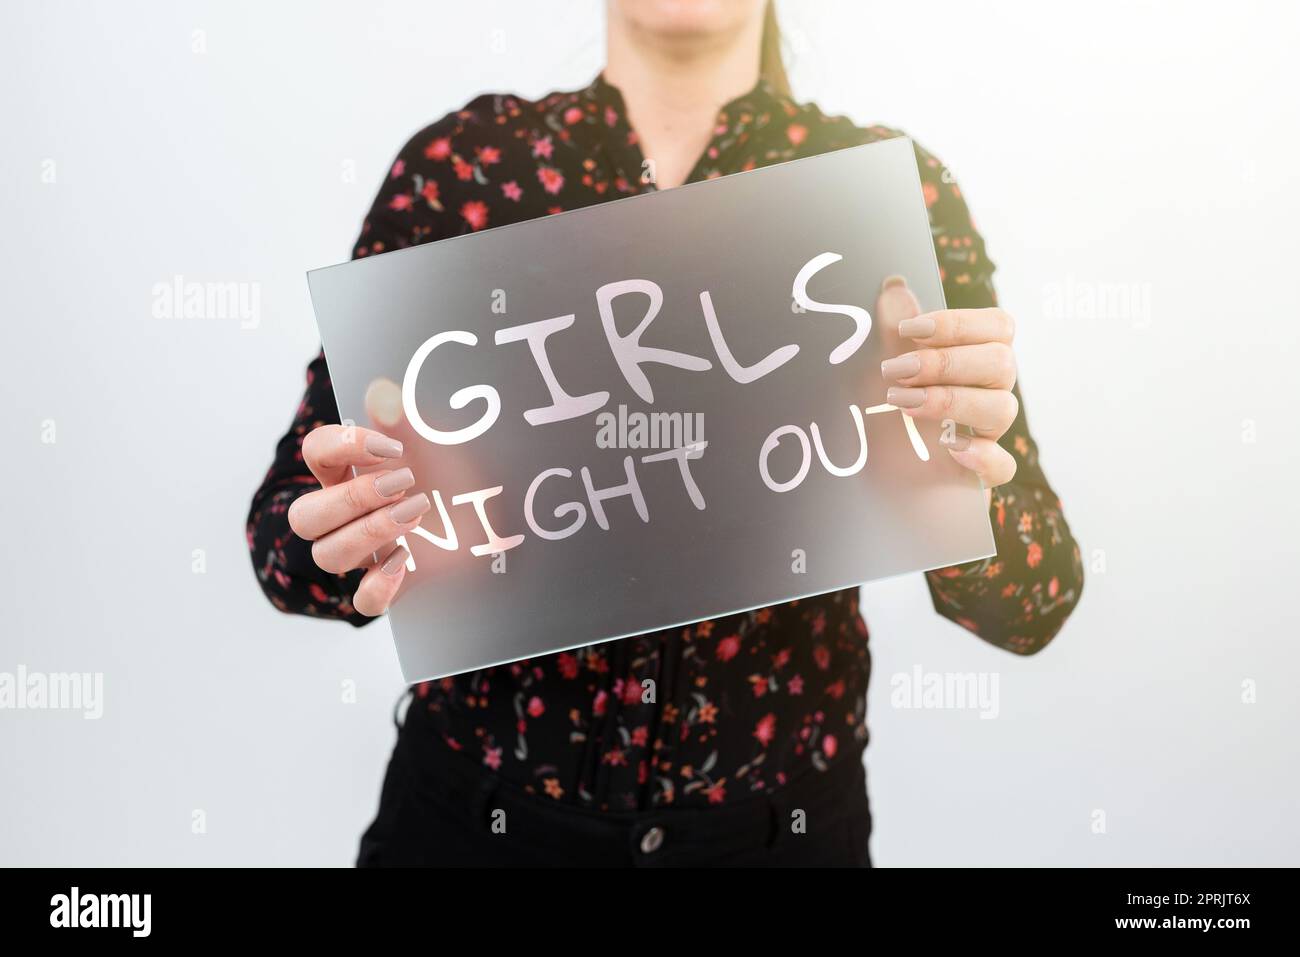 Schild mit Girls Night Outfreences und freier Mentalität für die Mädchen der modernen Zeit. Internetbegriff Freiheiten und freie Mentalität für Mädchen in der modernen Zeit Stockfoto